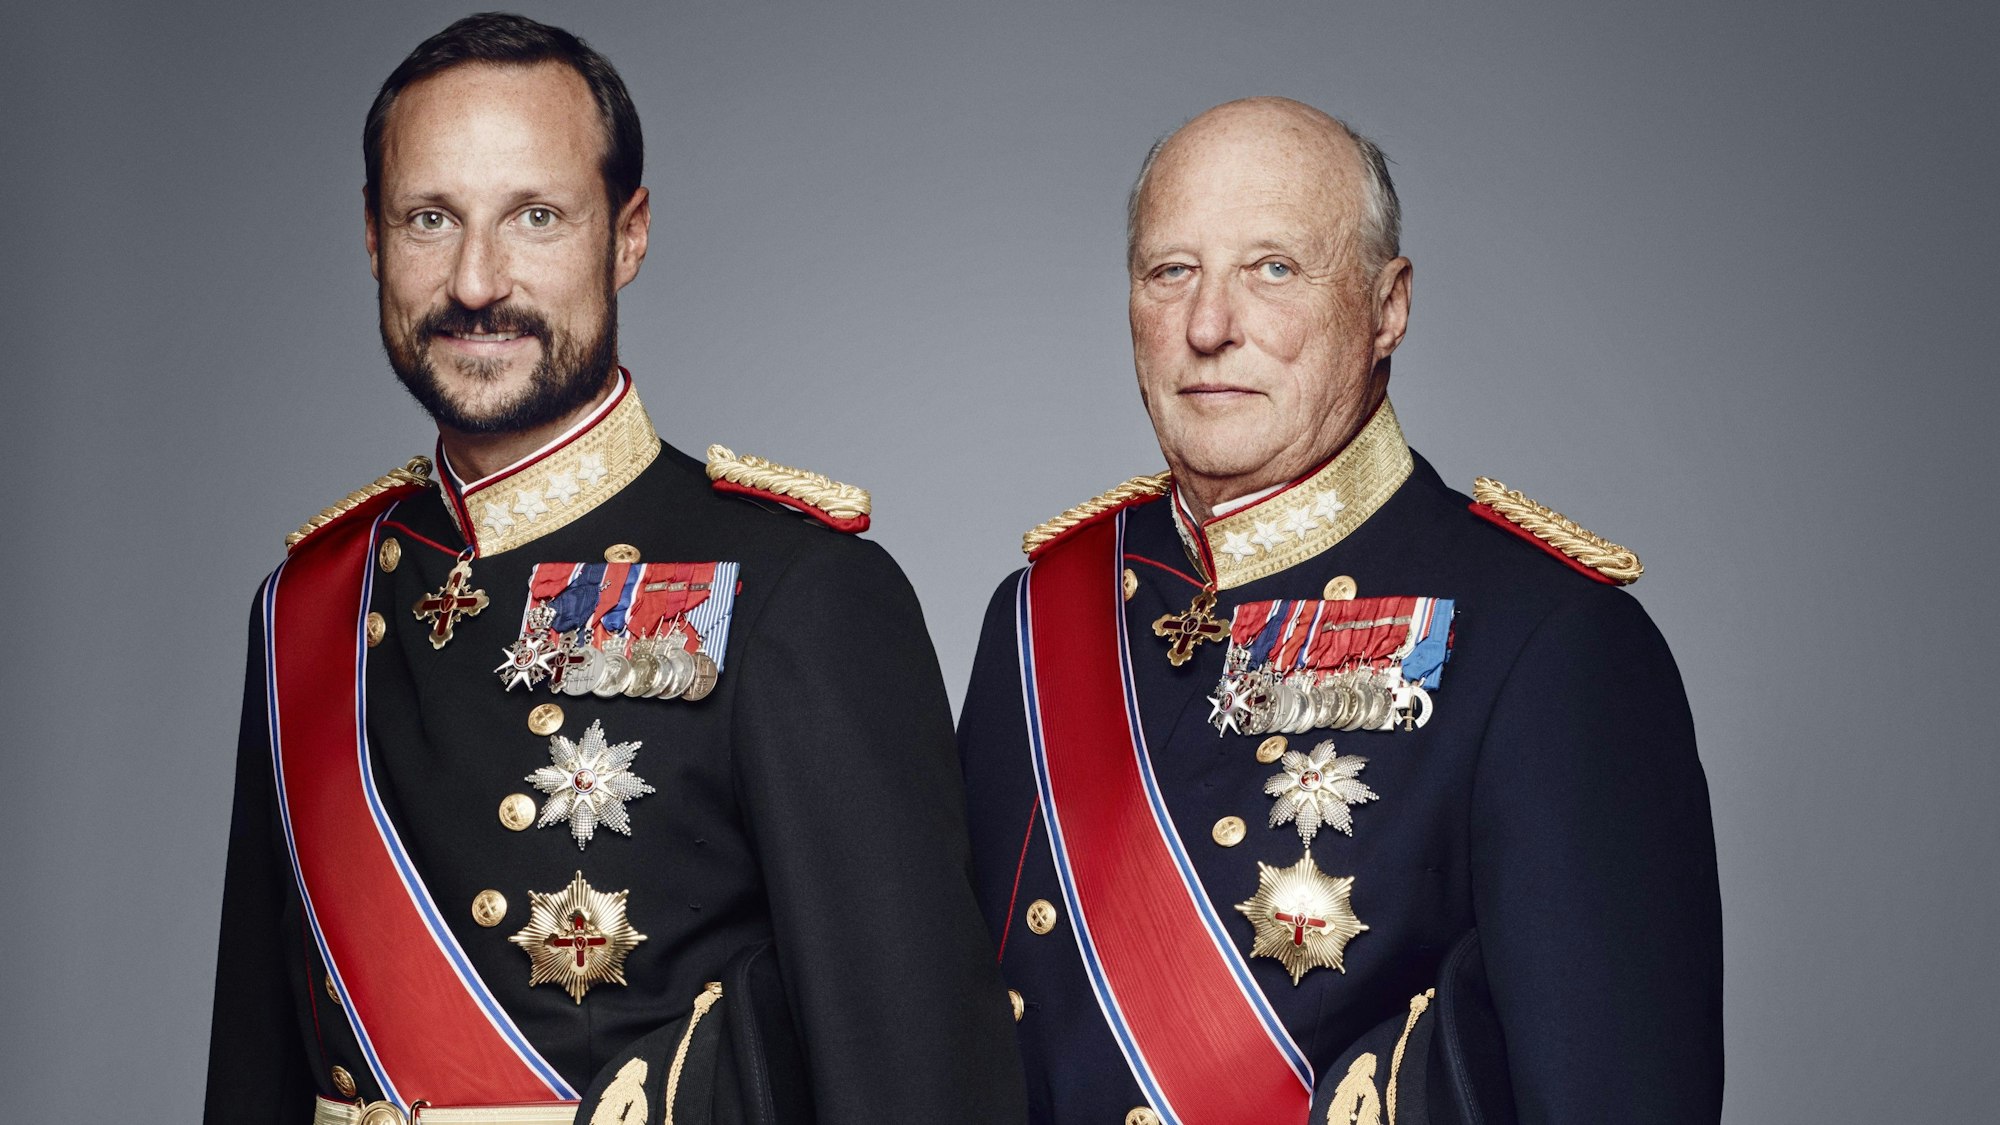 Kronprinz Haakon (l) und König Harald V. (r) auf einem offiziellen Porträtfoto.